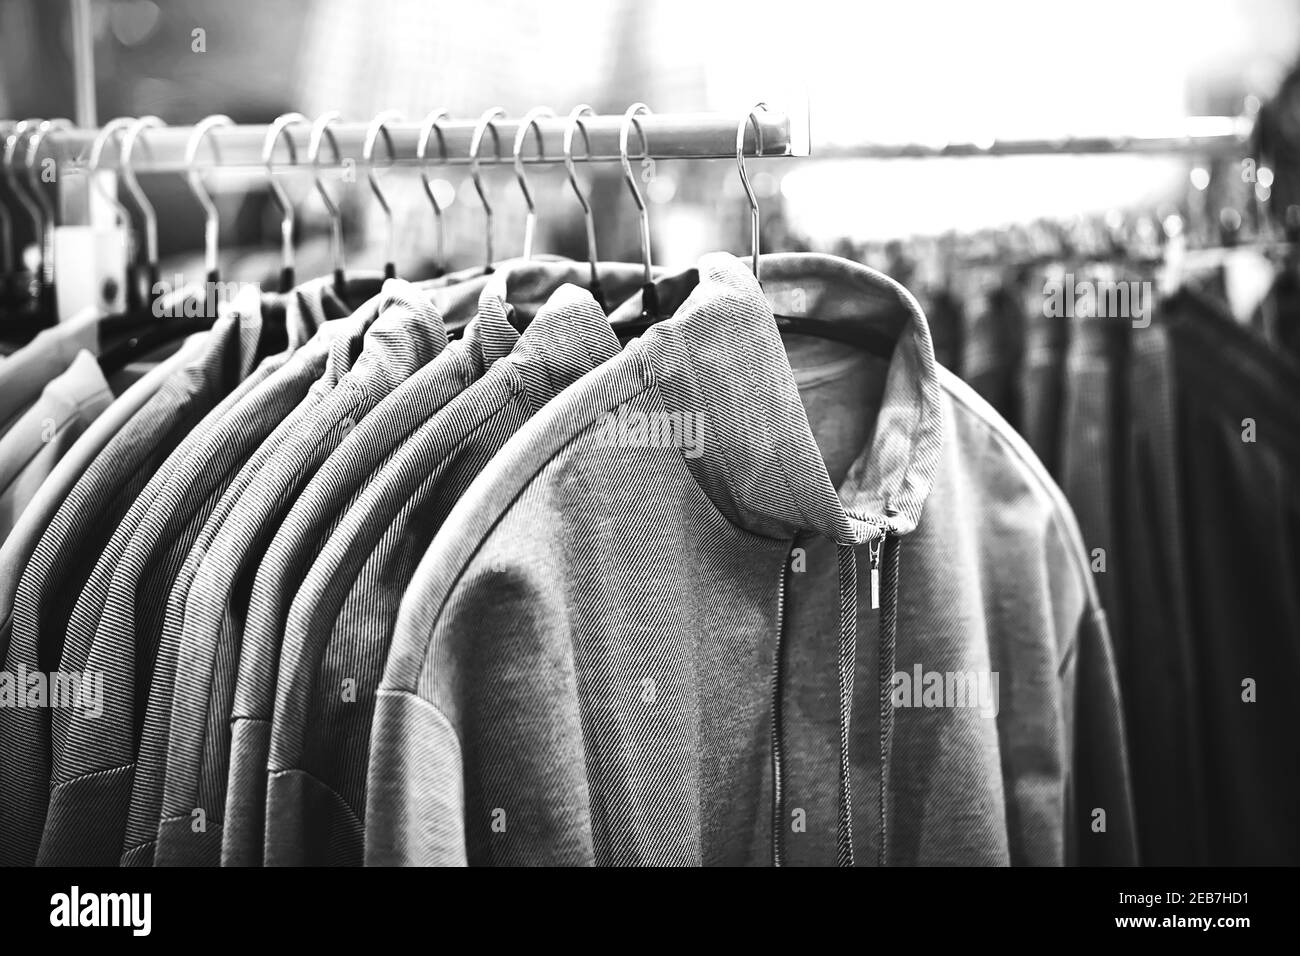 Ein Schwarz-Weiß-Bild von Hoodies, die in einem Bekleidungsgeschäft in der Mall an Kleiderbügeln hängen. Einkaufen. Stockfoto